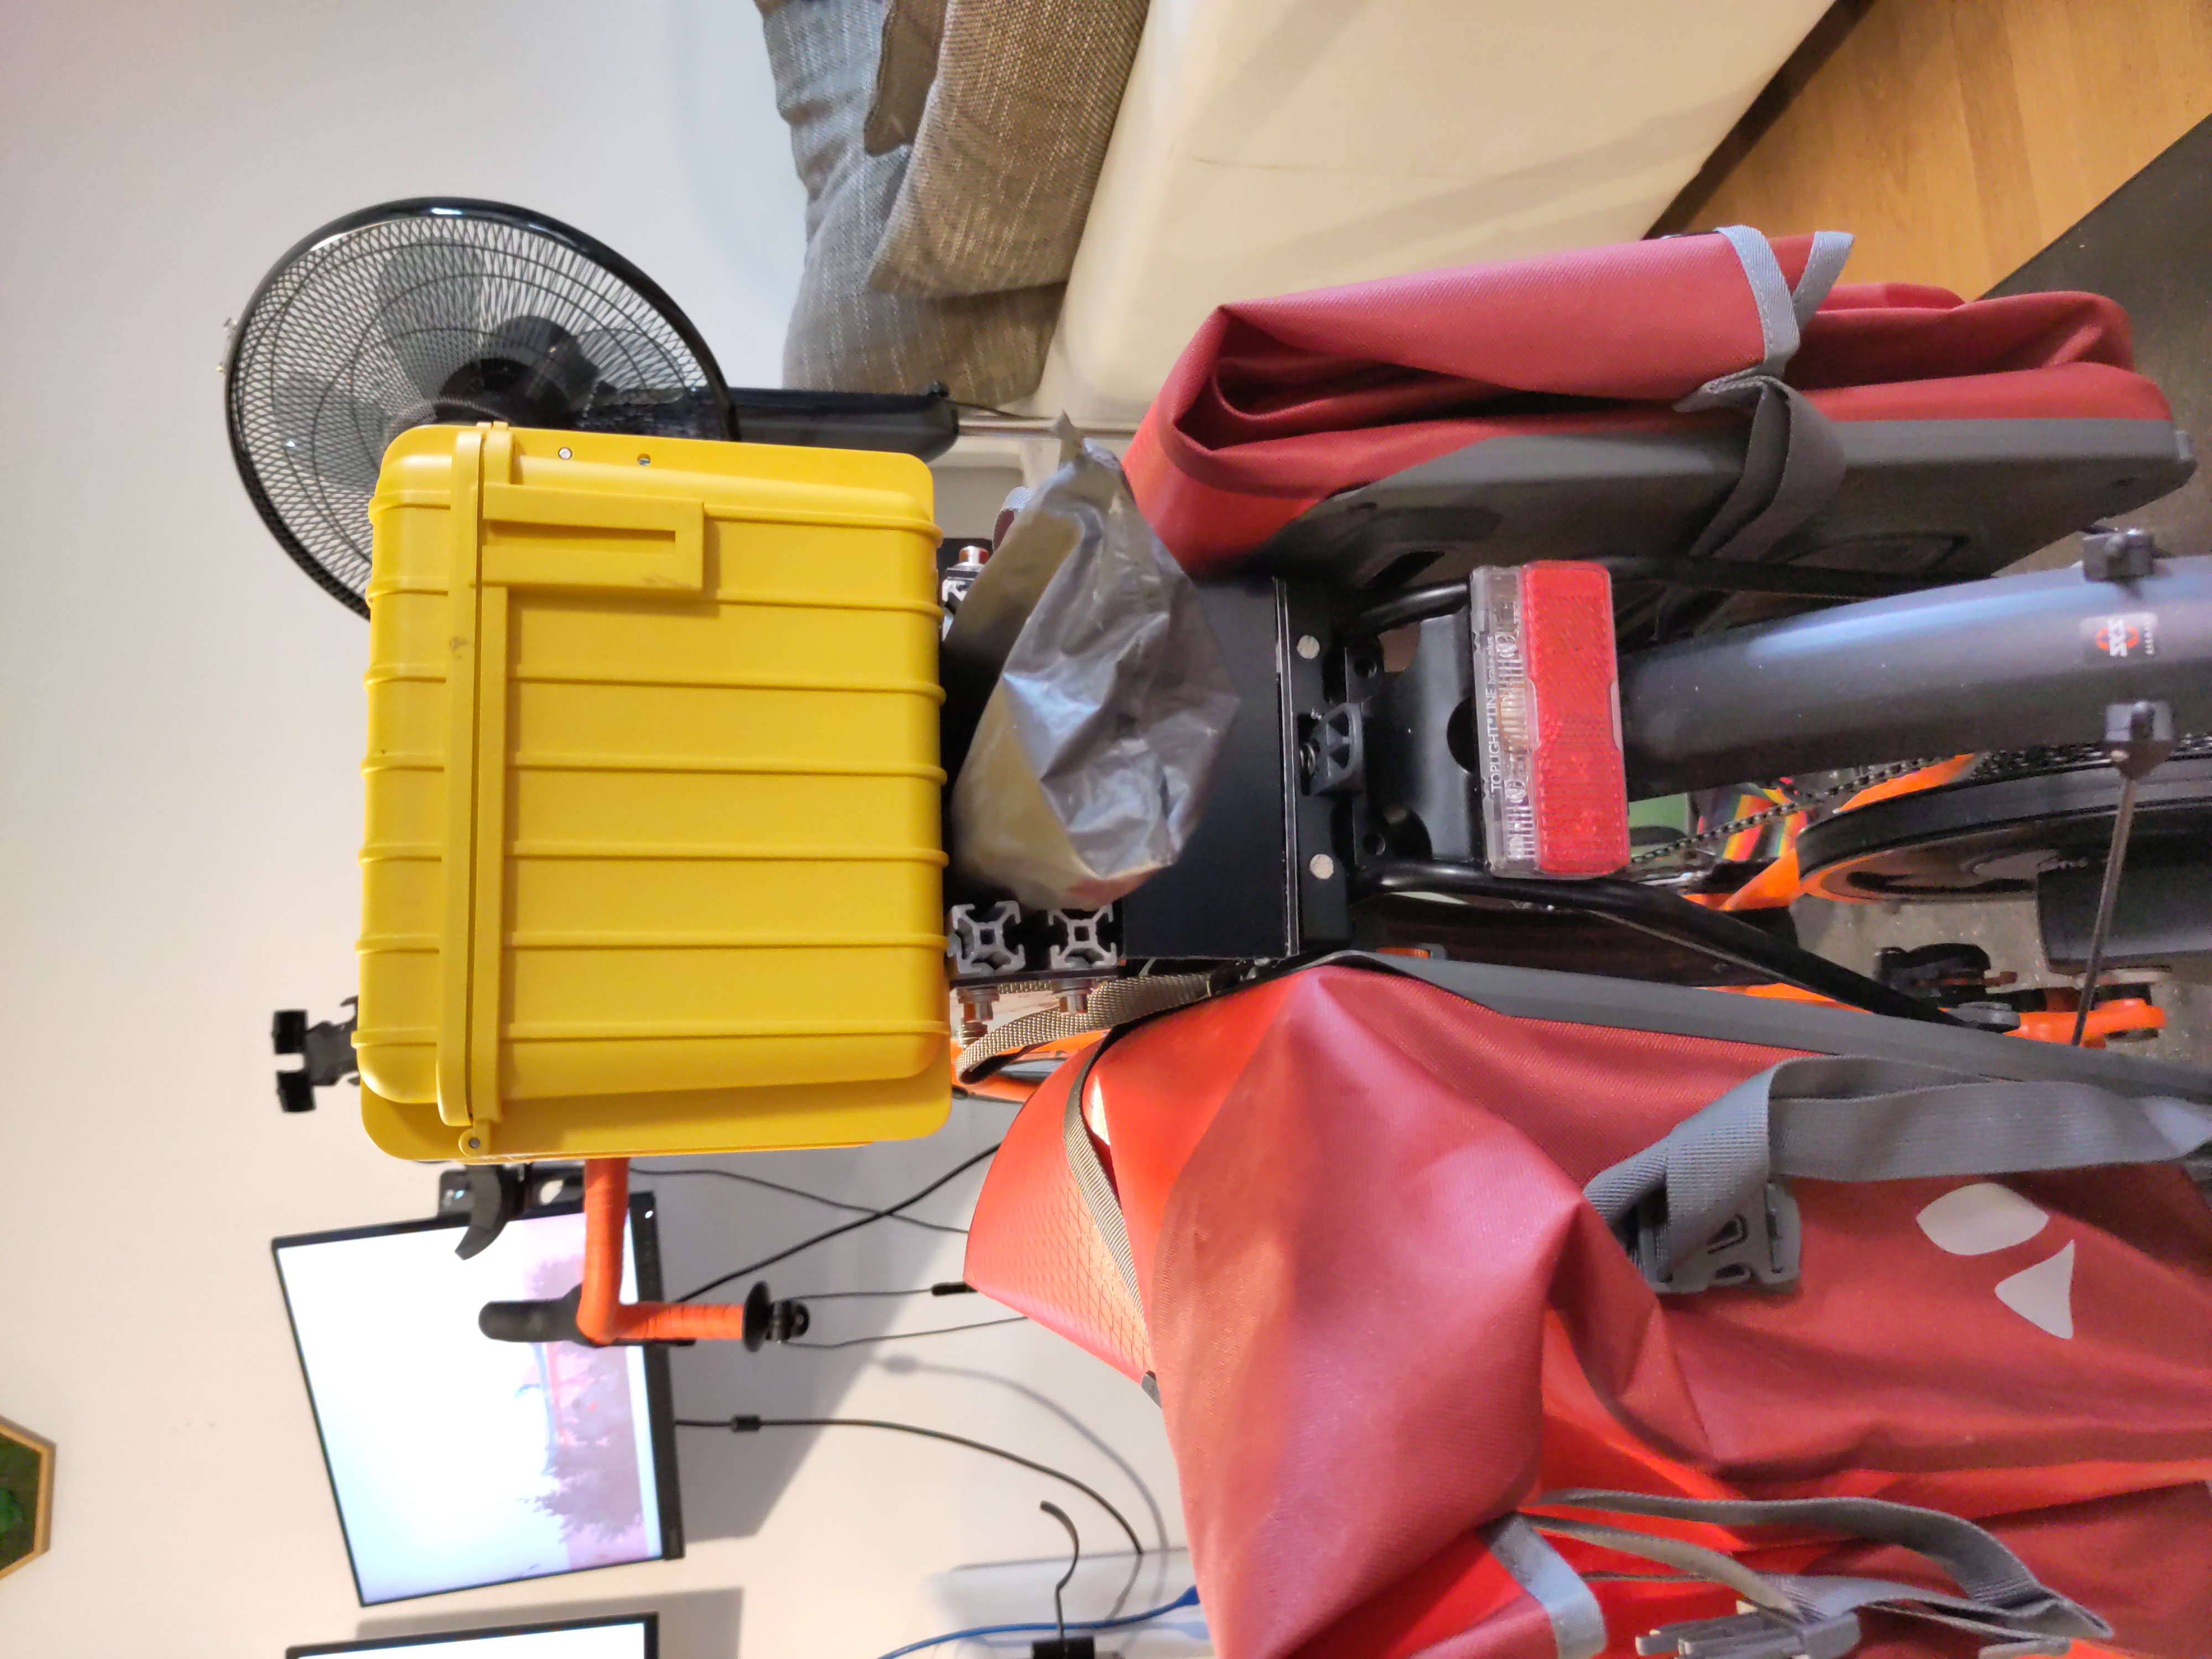 Fahrrad von Hinten. Gelbe Kiste und Zeltstangen auf dem Gepäckträger